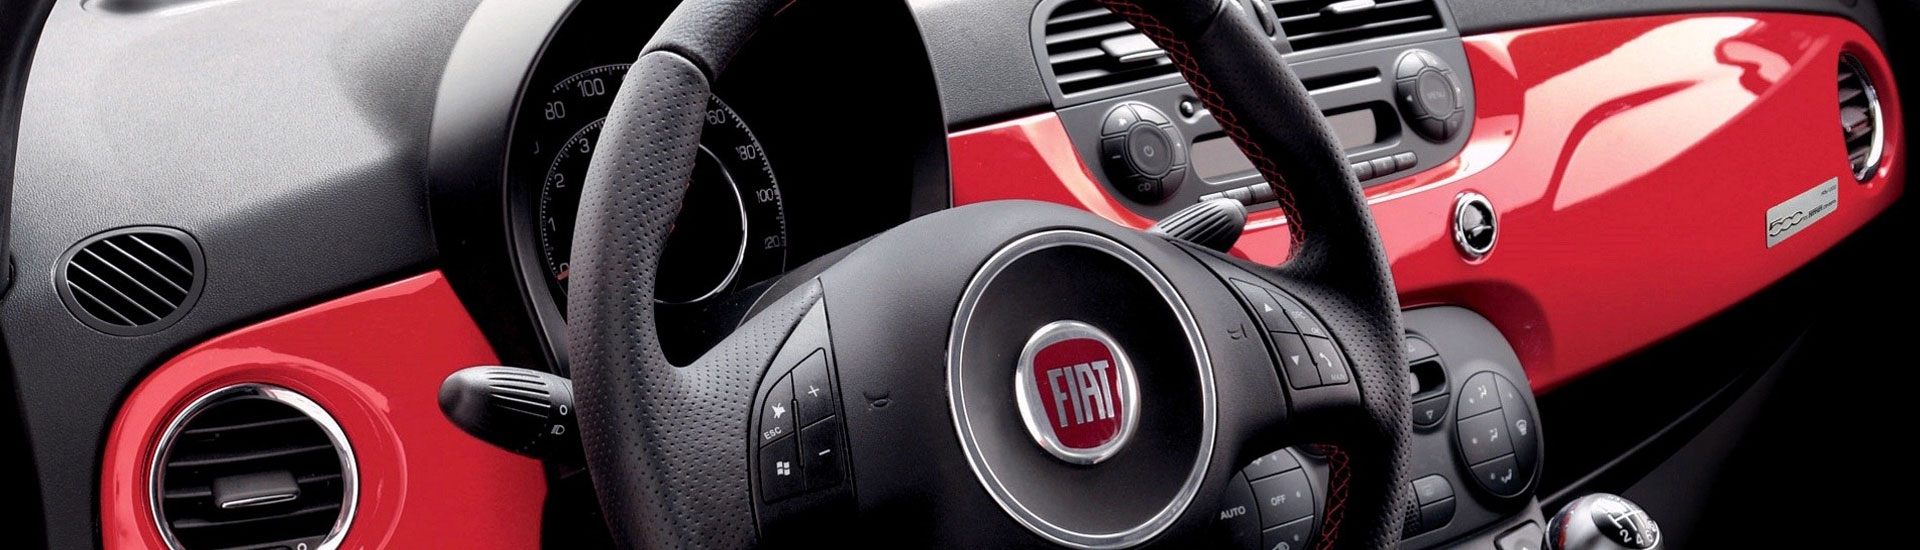 2017 Fiat 500e Custom Dash Kits